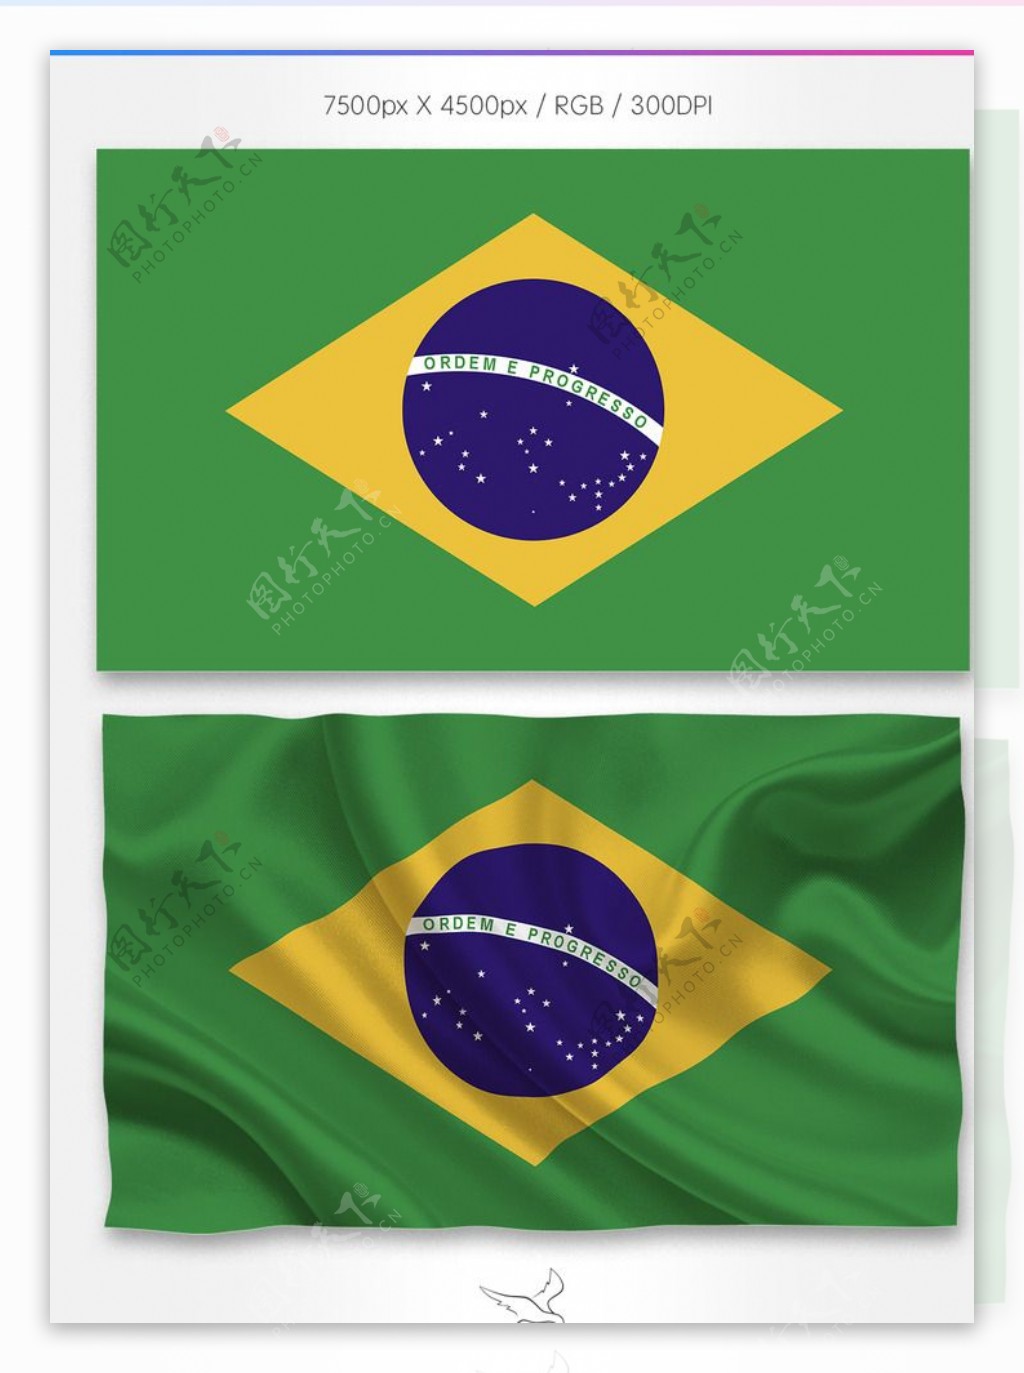 2014巴西世界杯小米手机壁纸 2014巴西世界杯小米手机壁纸专辑下载-找素材网